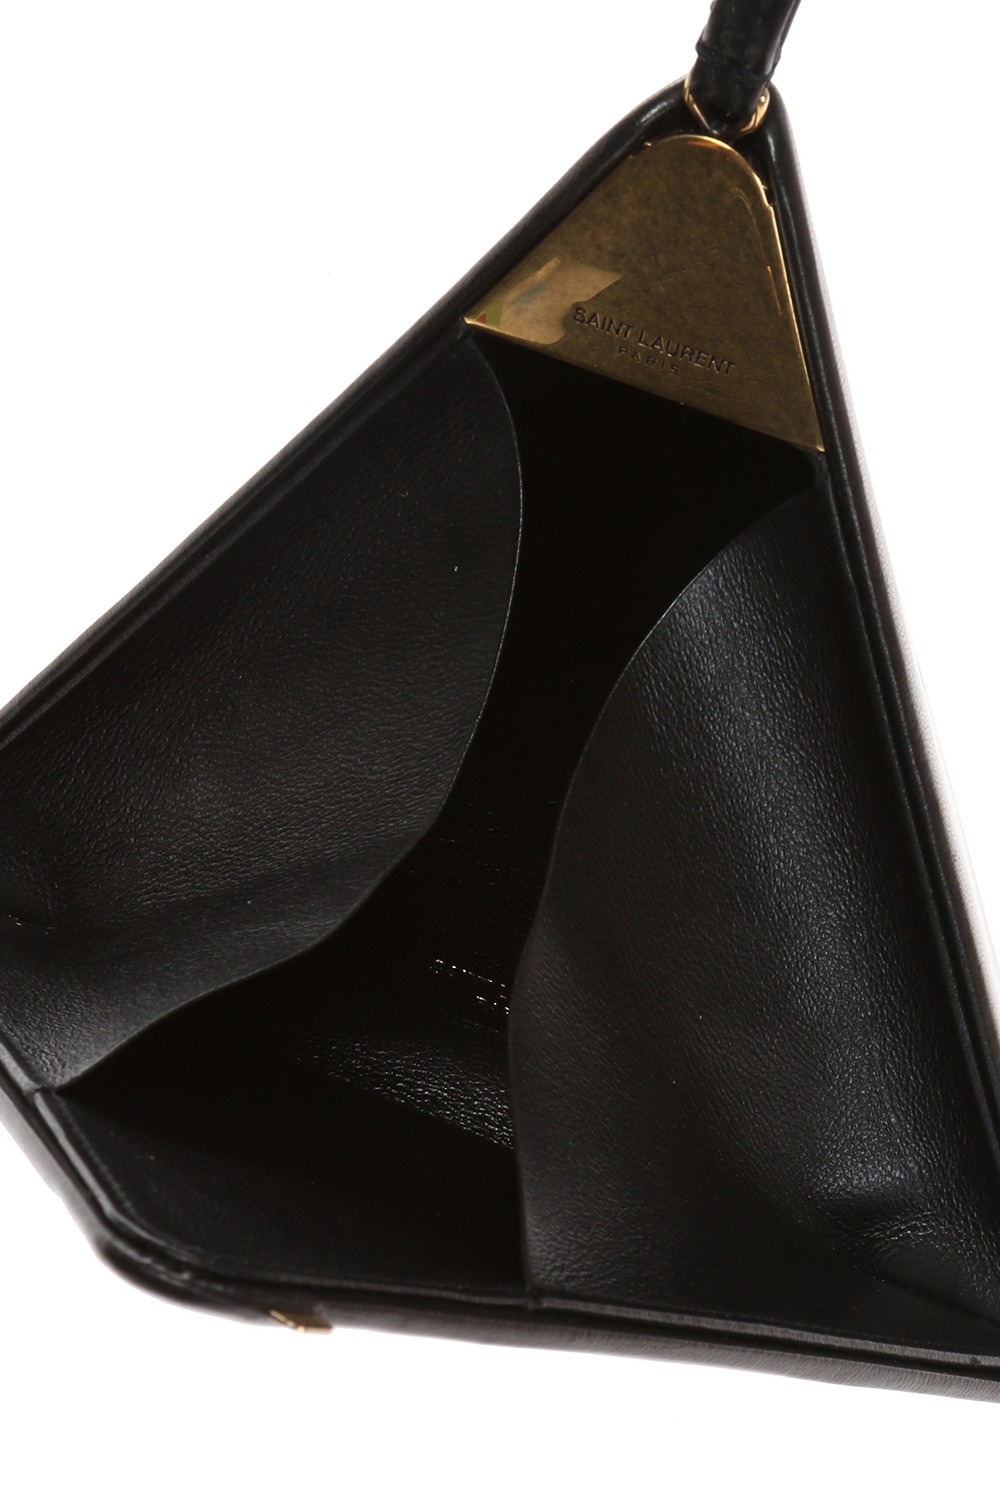 Saint Laurent's Golden Pyramid Leather Clutch Bag